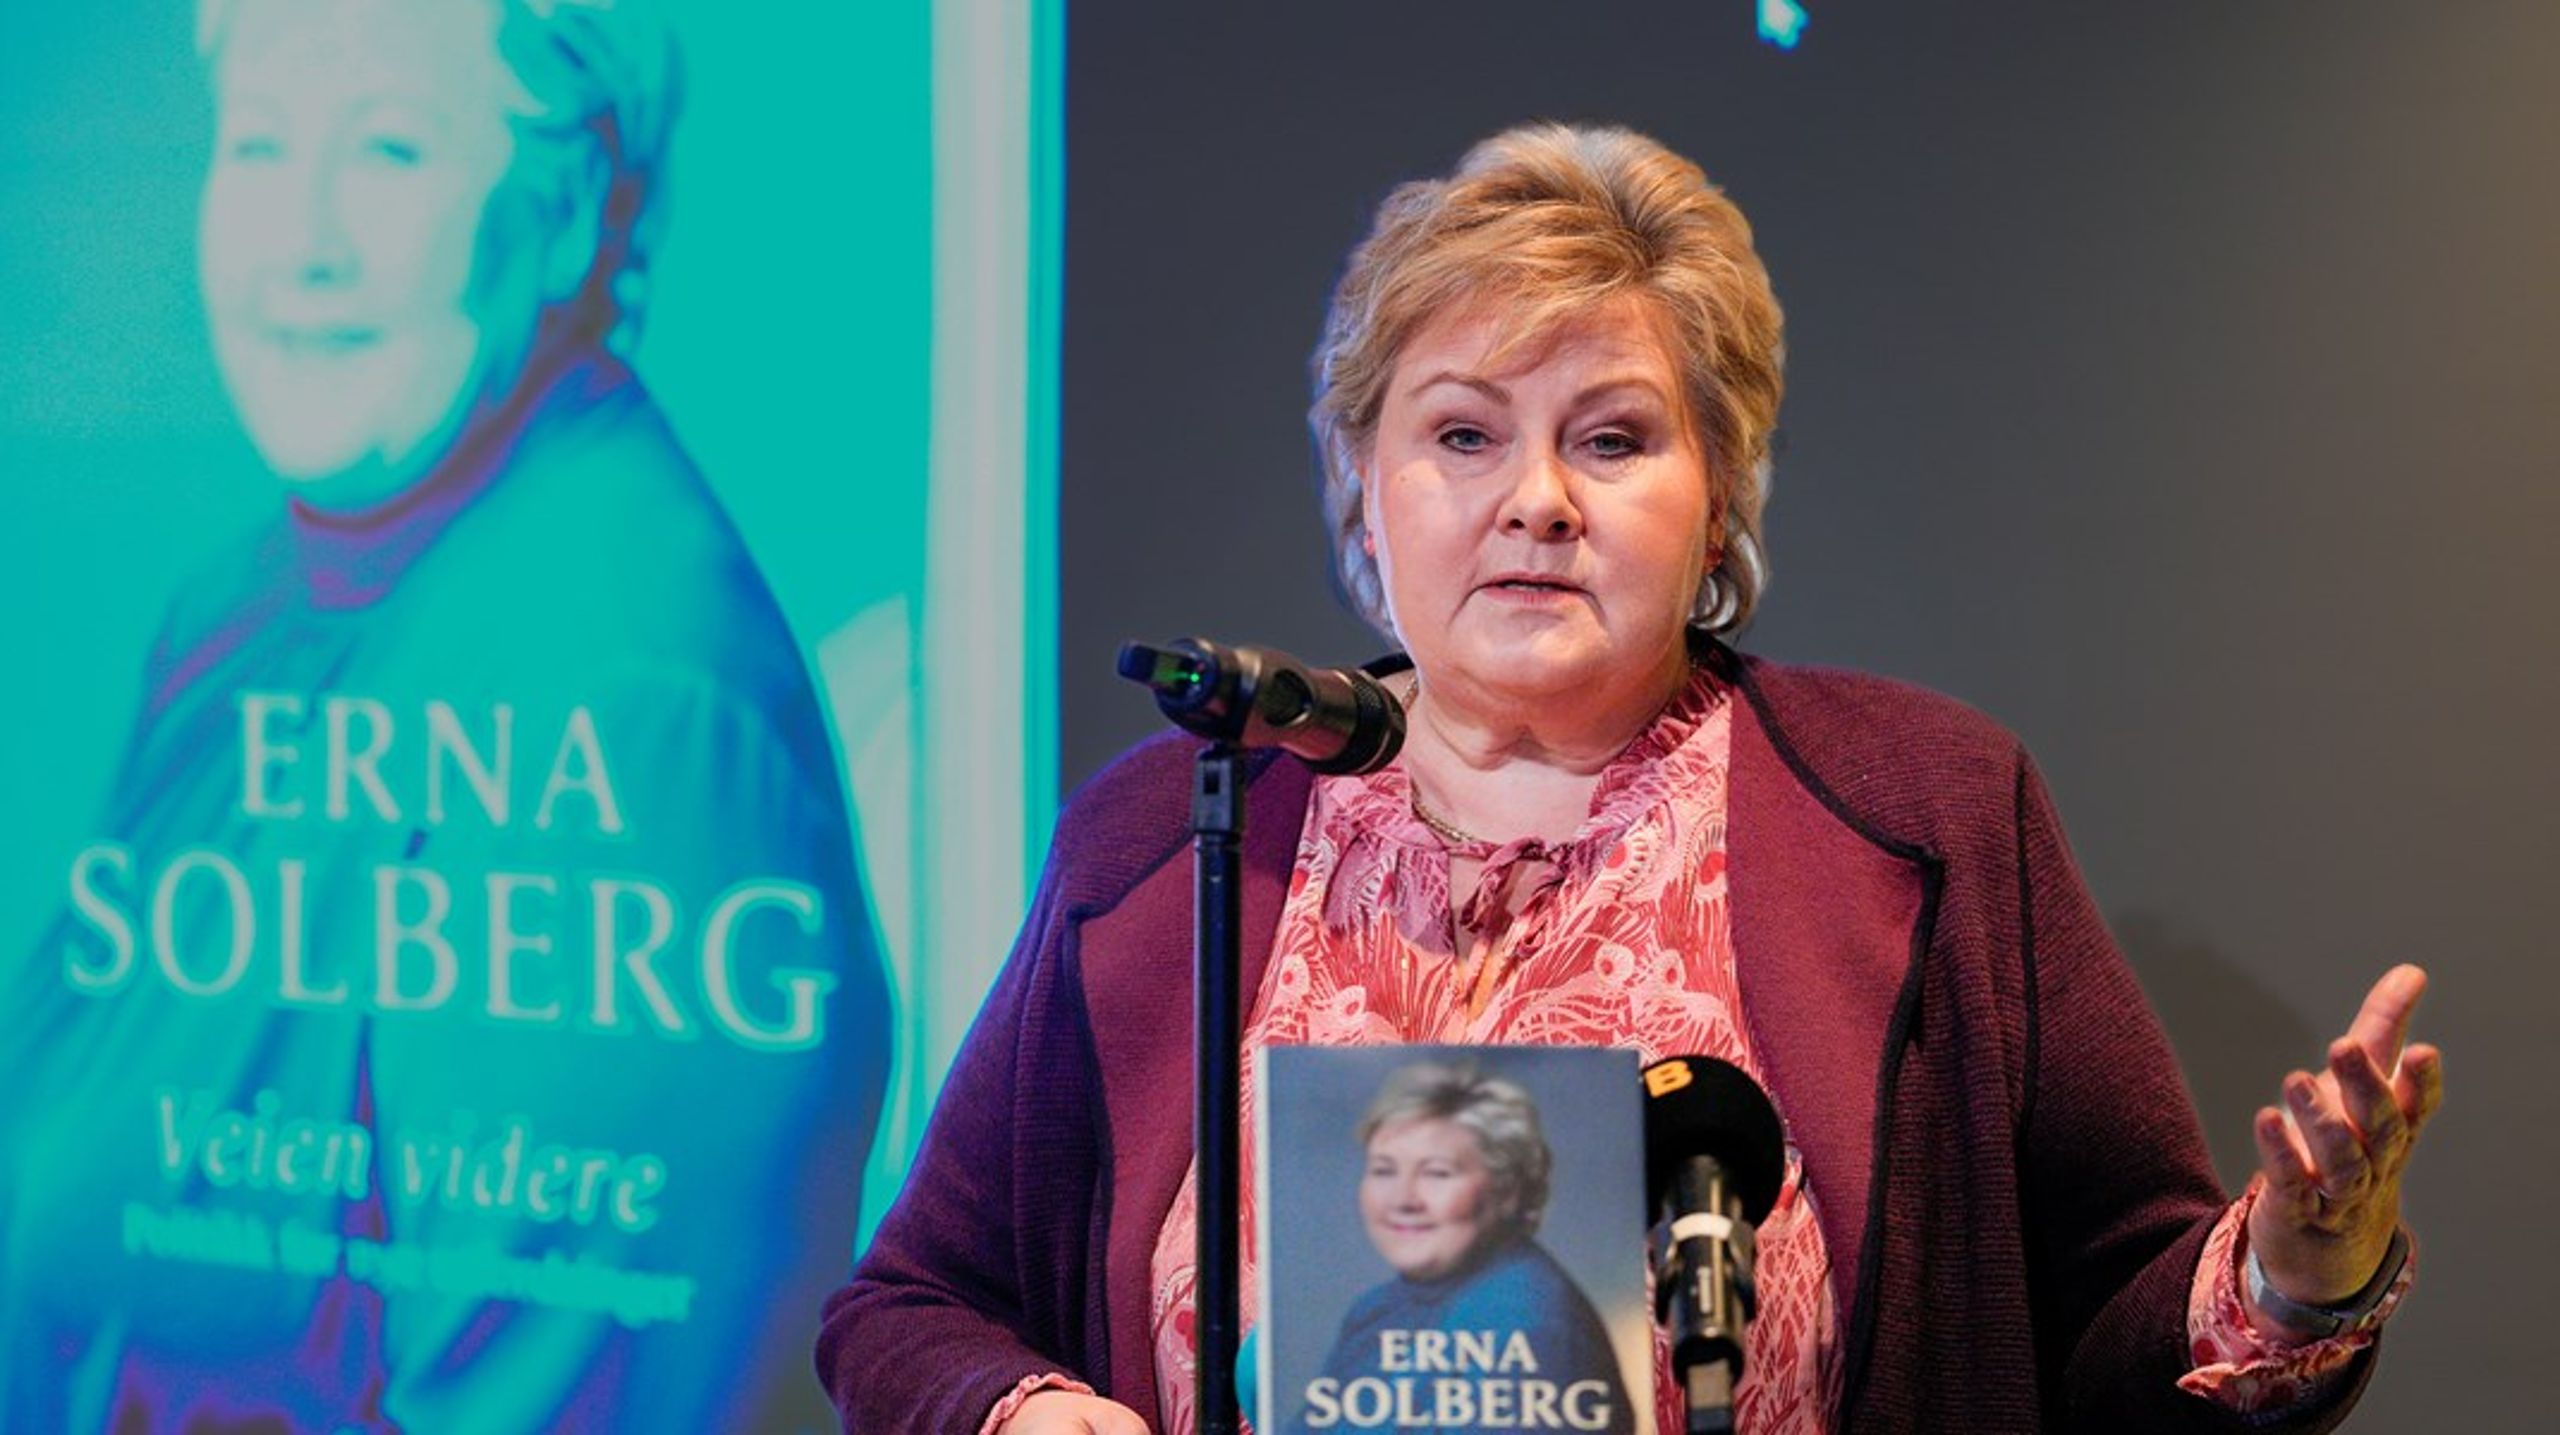 Torsdag lanserte Erna Solberg sin nye bok "Veien videre".